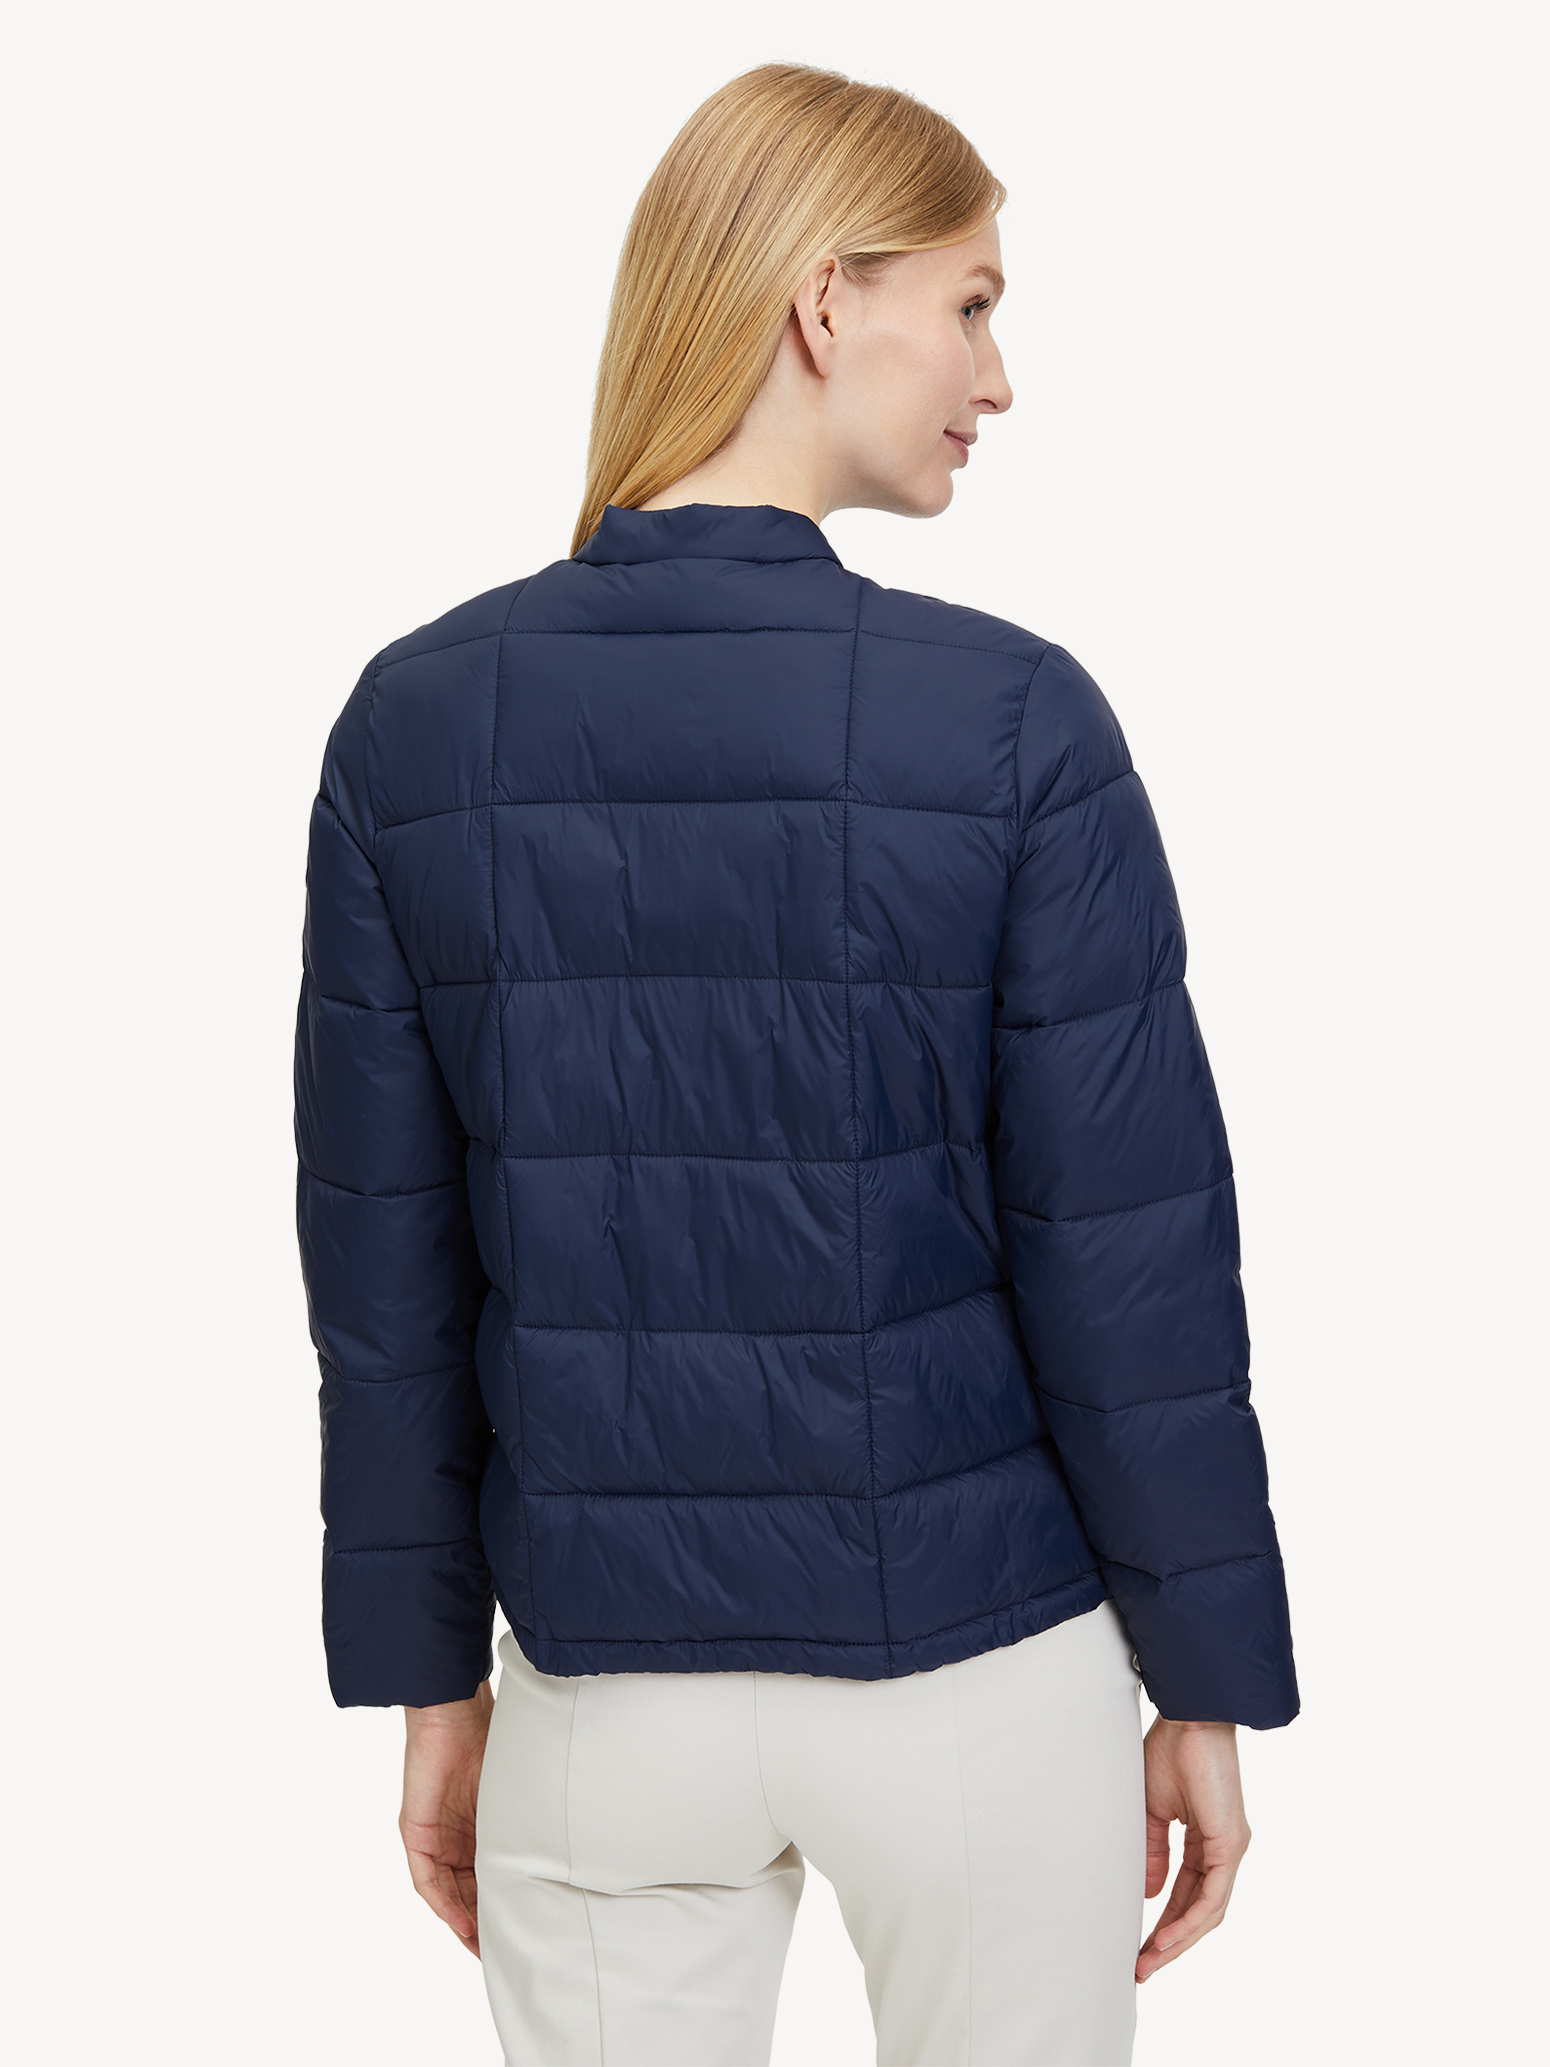 Jacket - blue warm lining